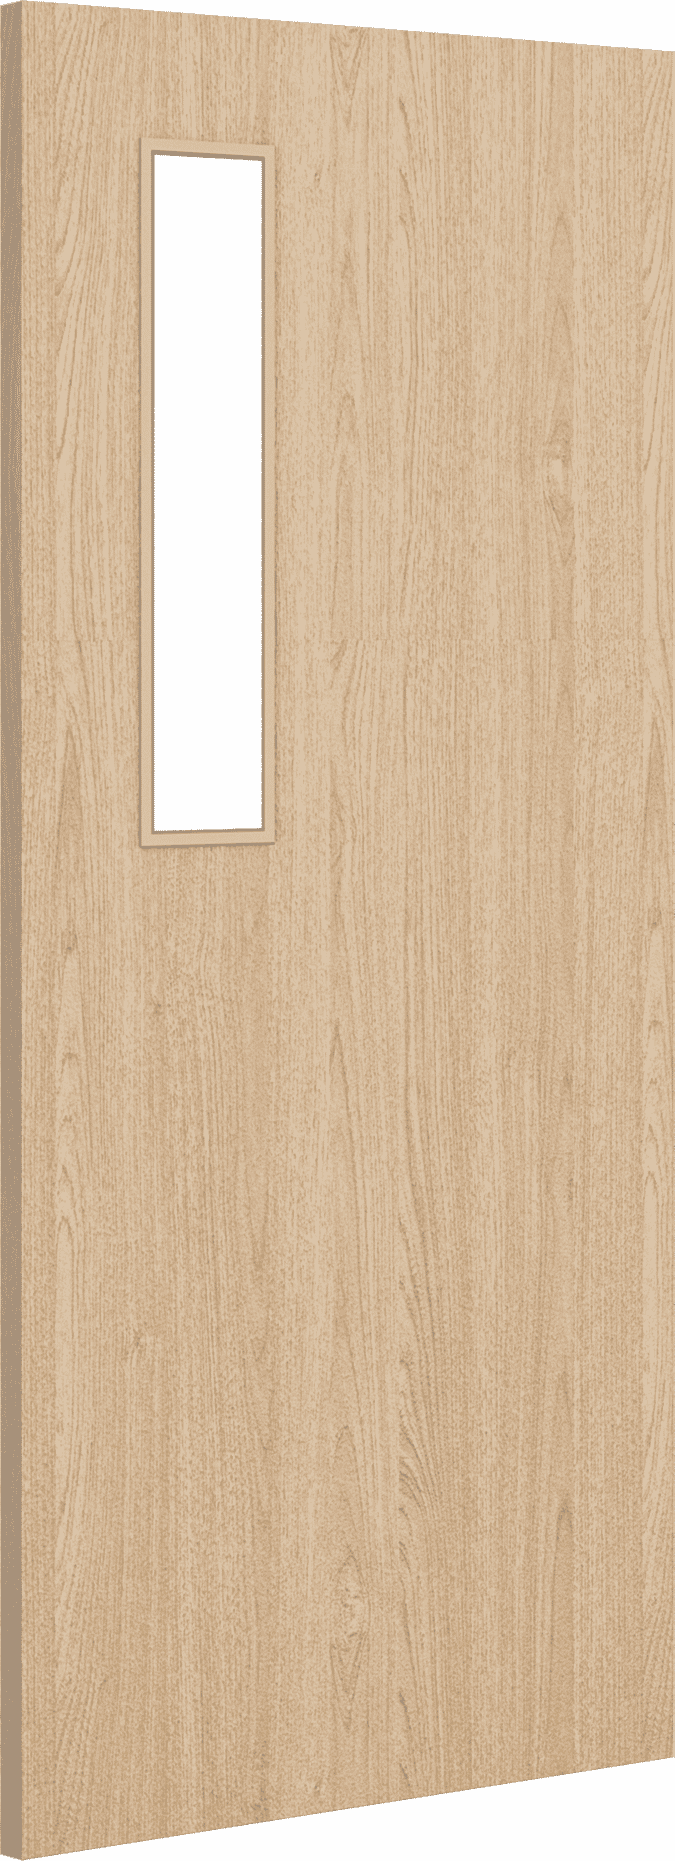 2040mm x 526mm x 44mm Architectural Oak 08 Clear Glazed - Prefinished FD30 Fire Door Blank